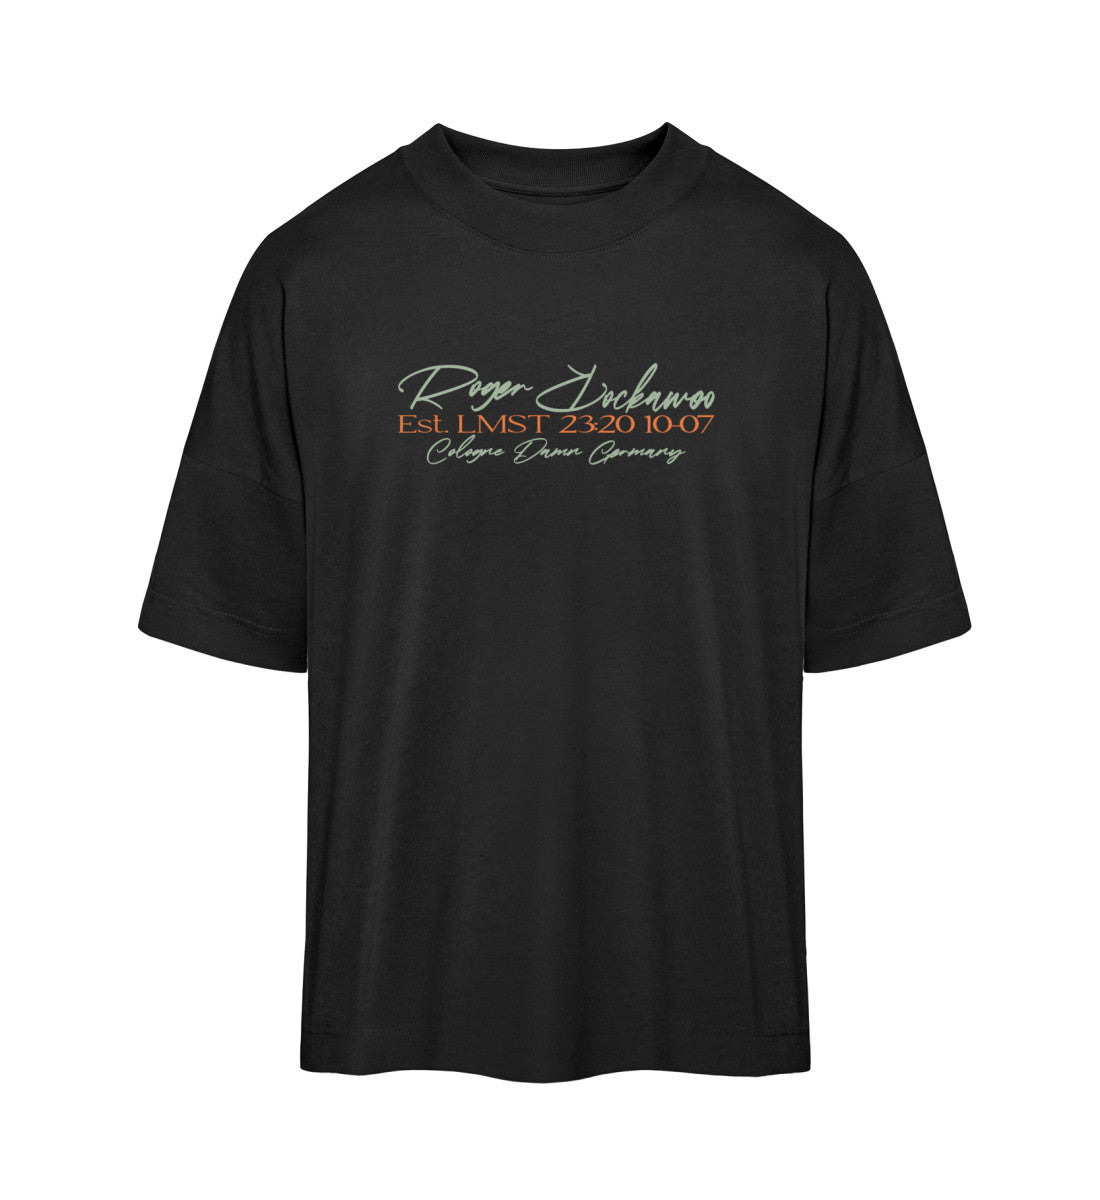 Schwarzes T-Shirt Unisex Oversize Fit für Frauen und Männer bedruckt mit dem Design der Roger Rockawoo Kollektion basketball 3x3